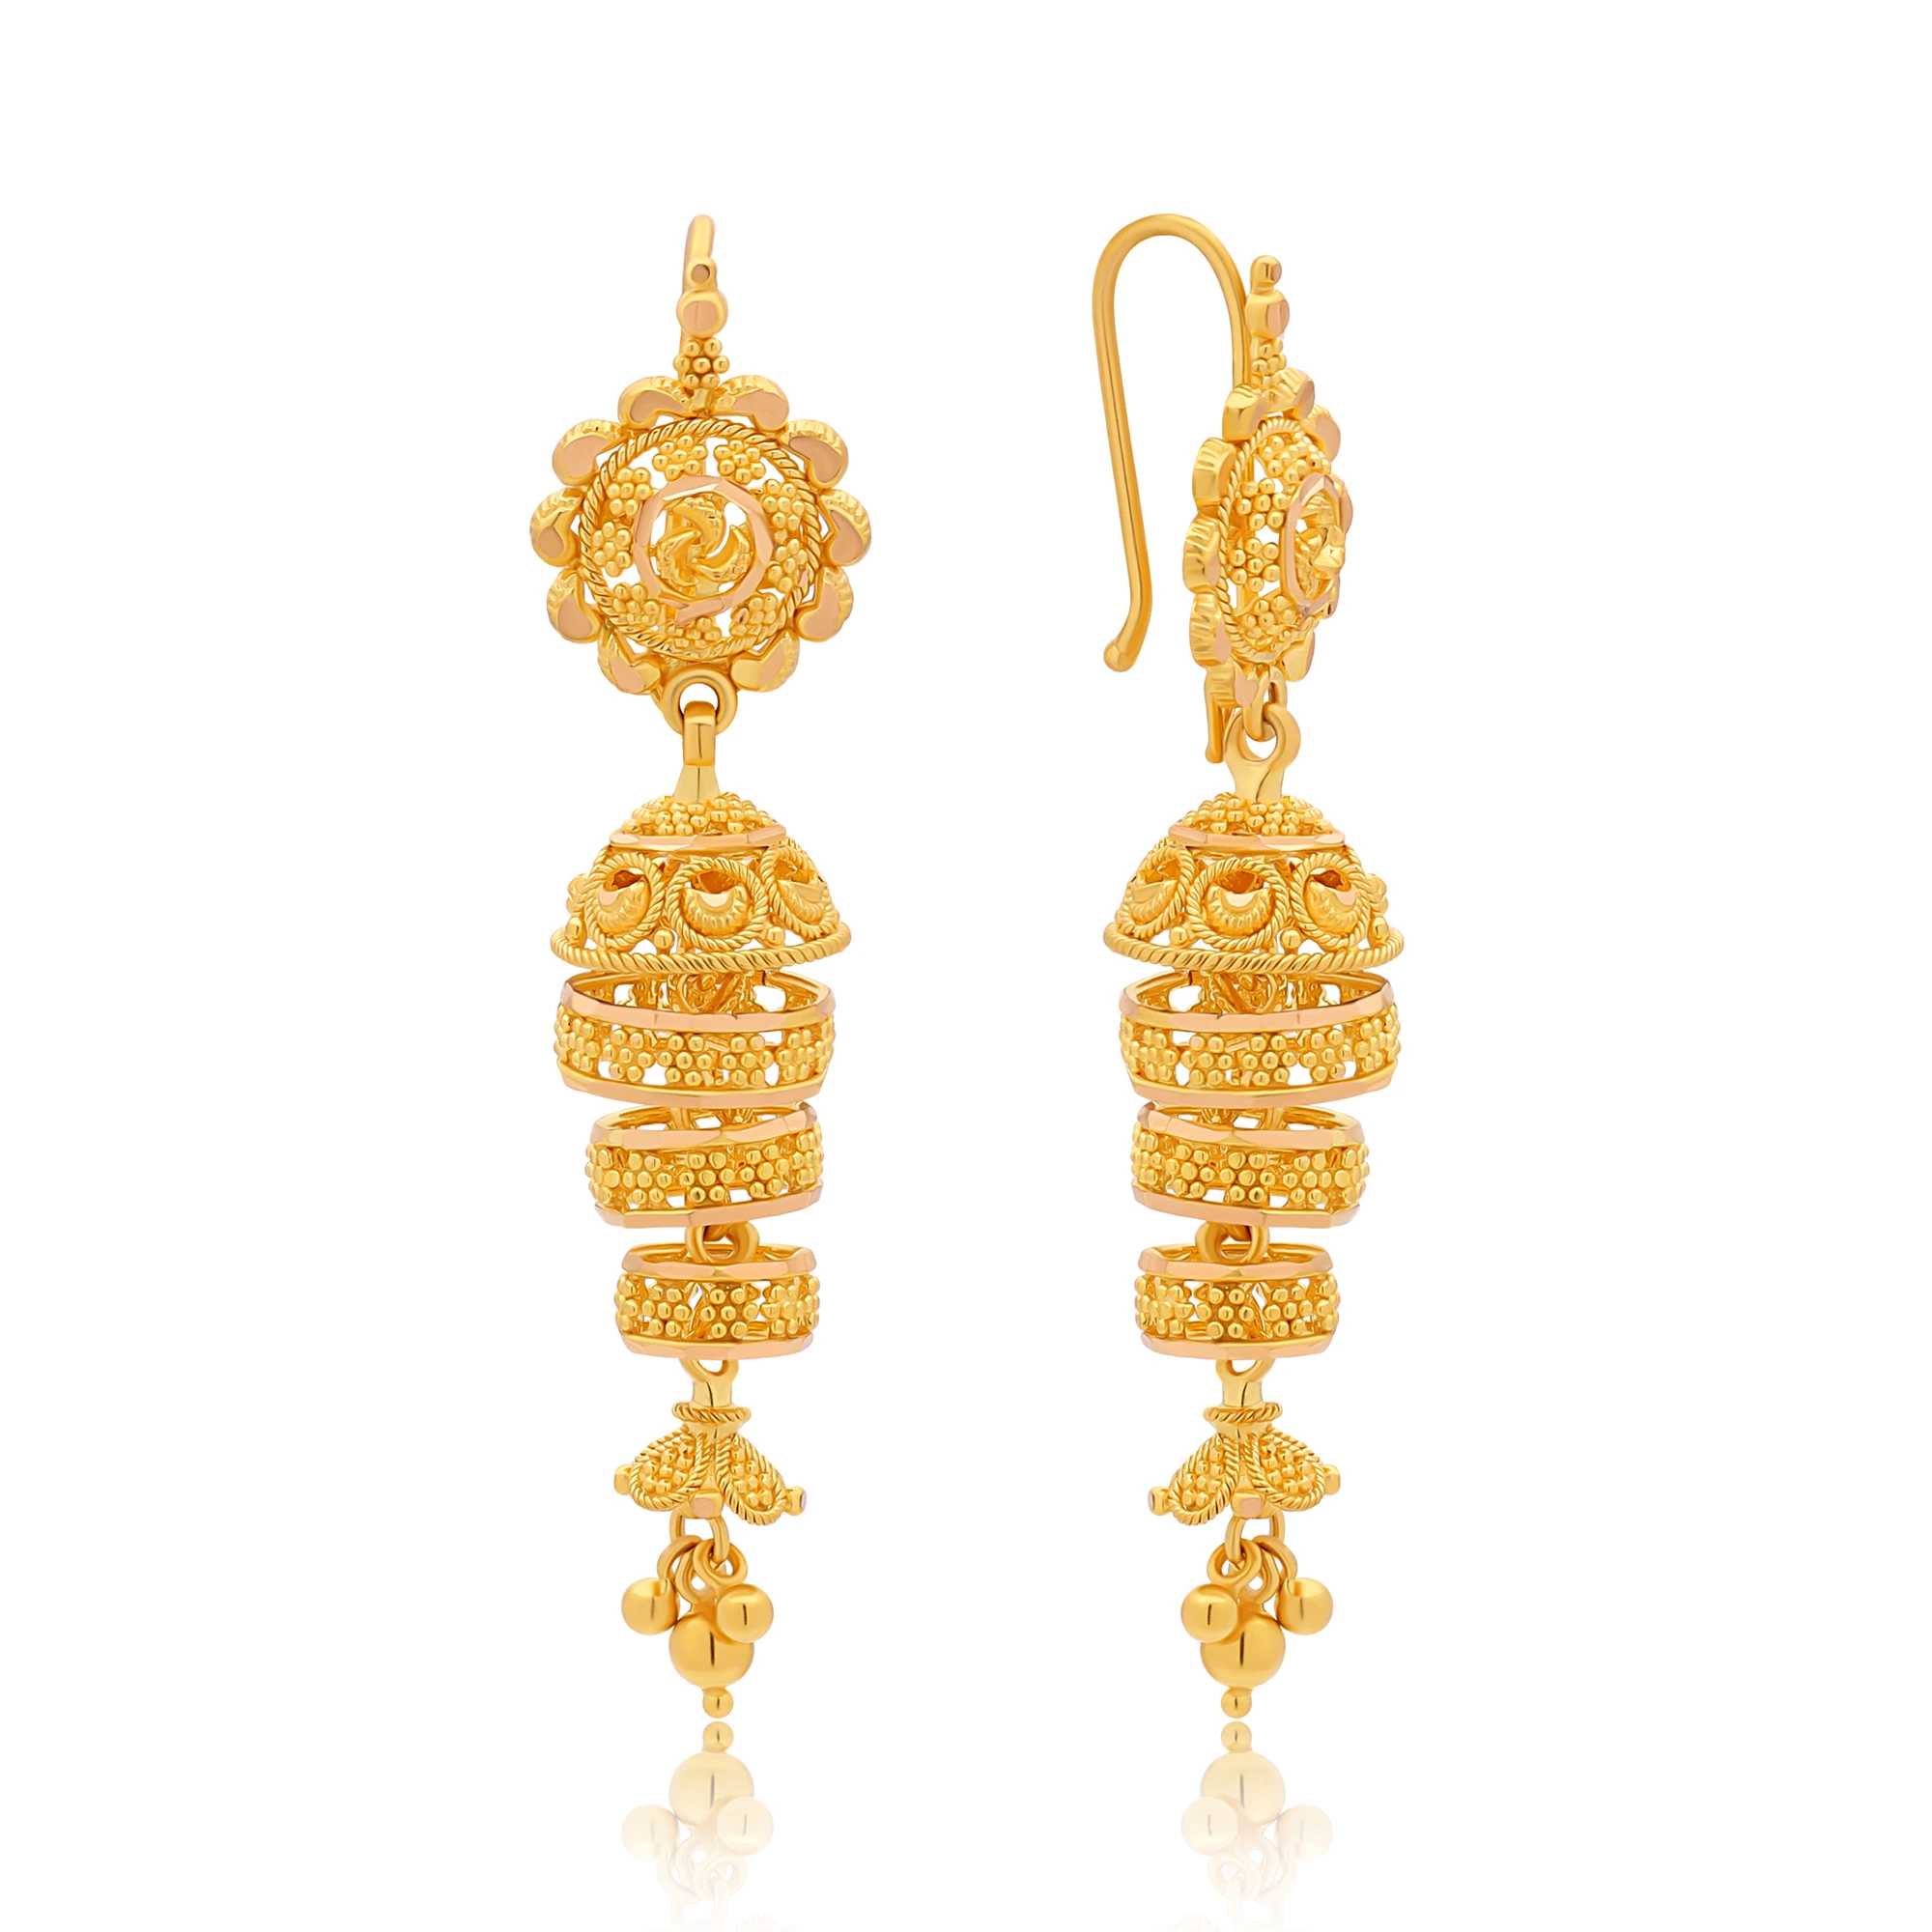 22ct Yellow Gold Flower Design Ladies Stud Earrings 2.1 Grams - Etsy